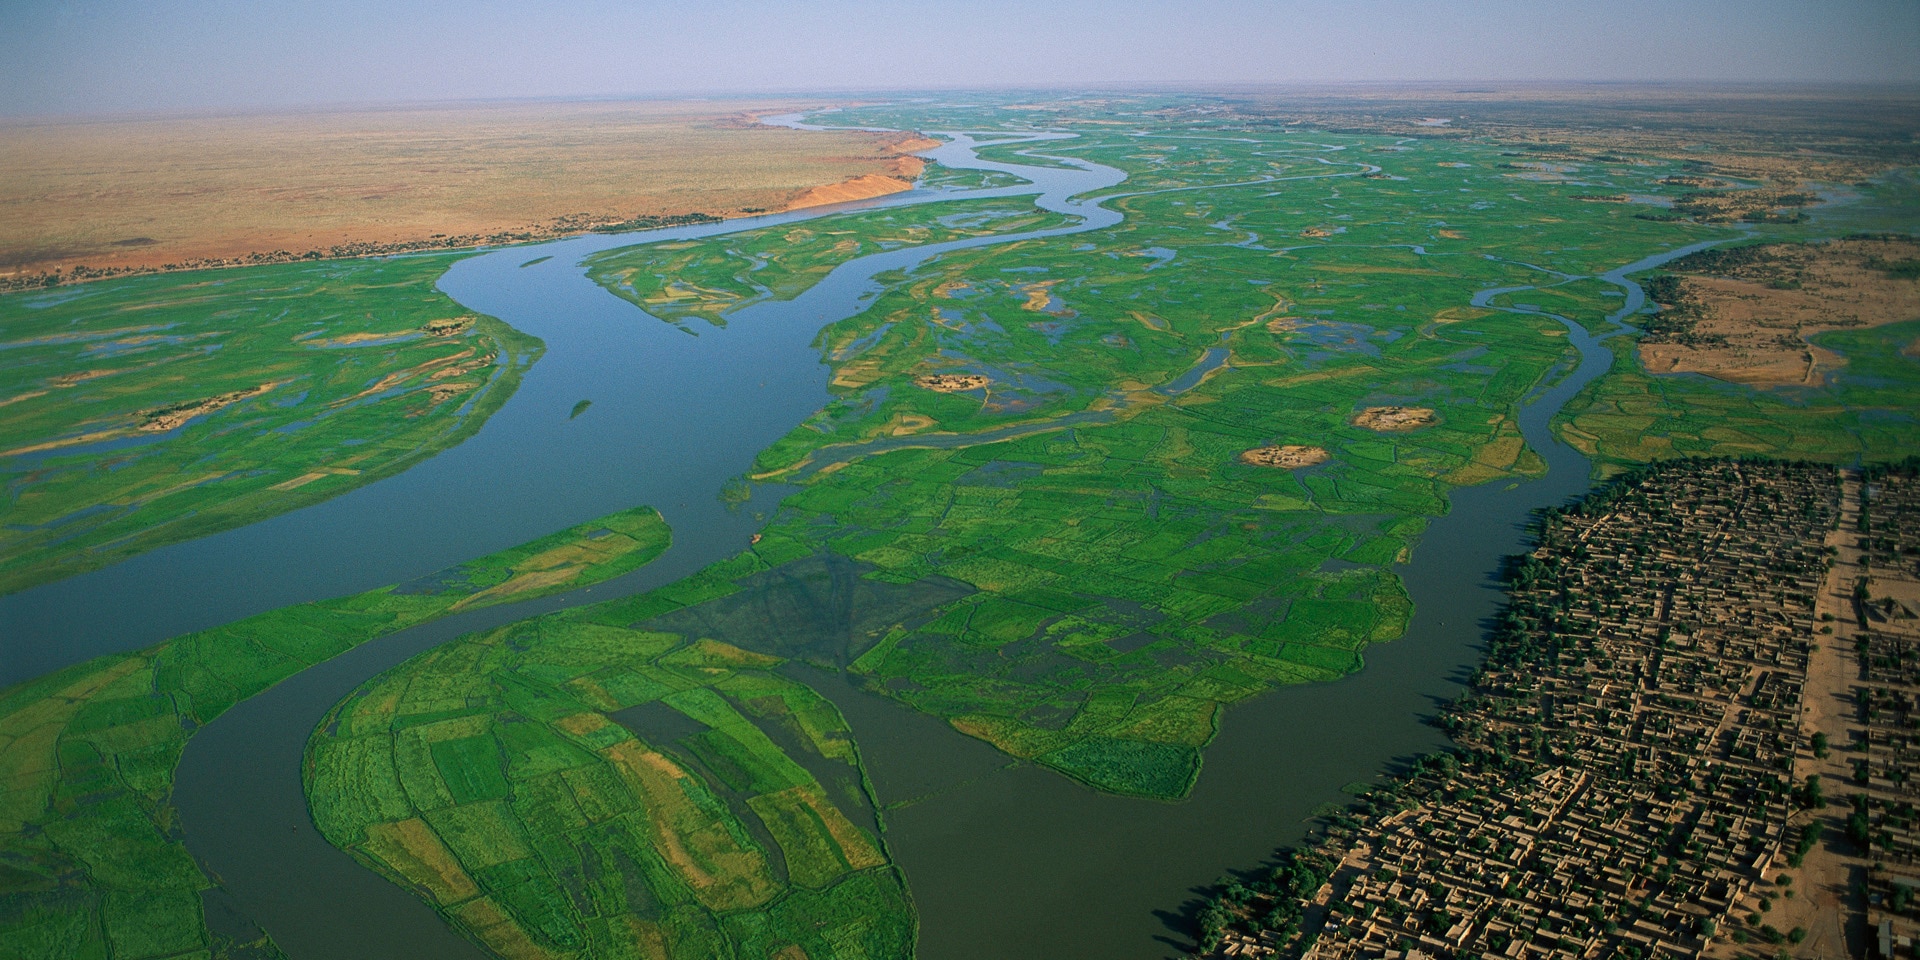  Risaie nei pressi del fiume Niger in Mali.